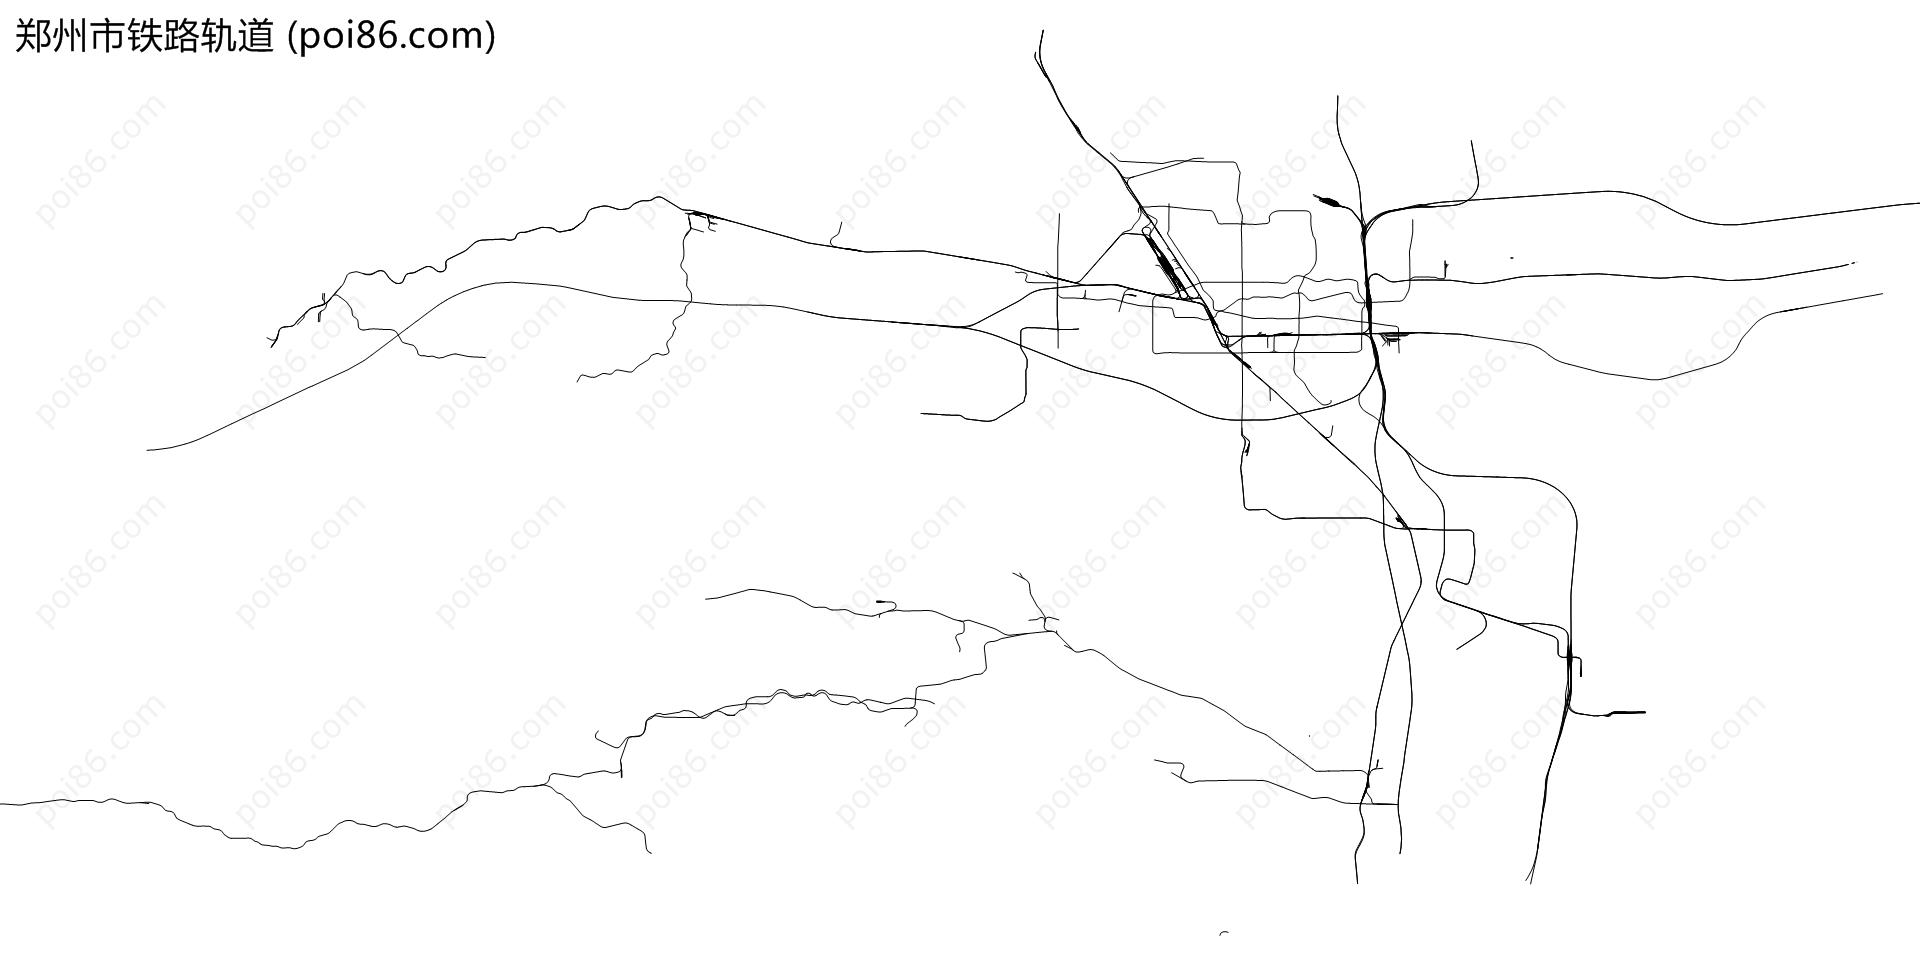 郑州市铁路轨道地图